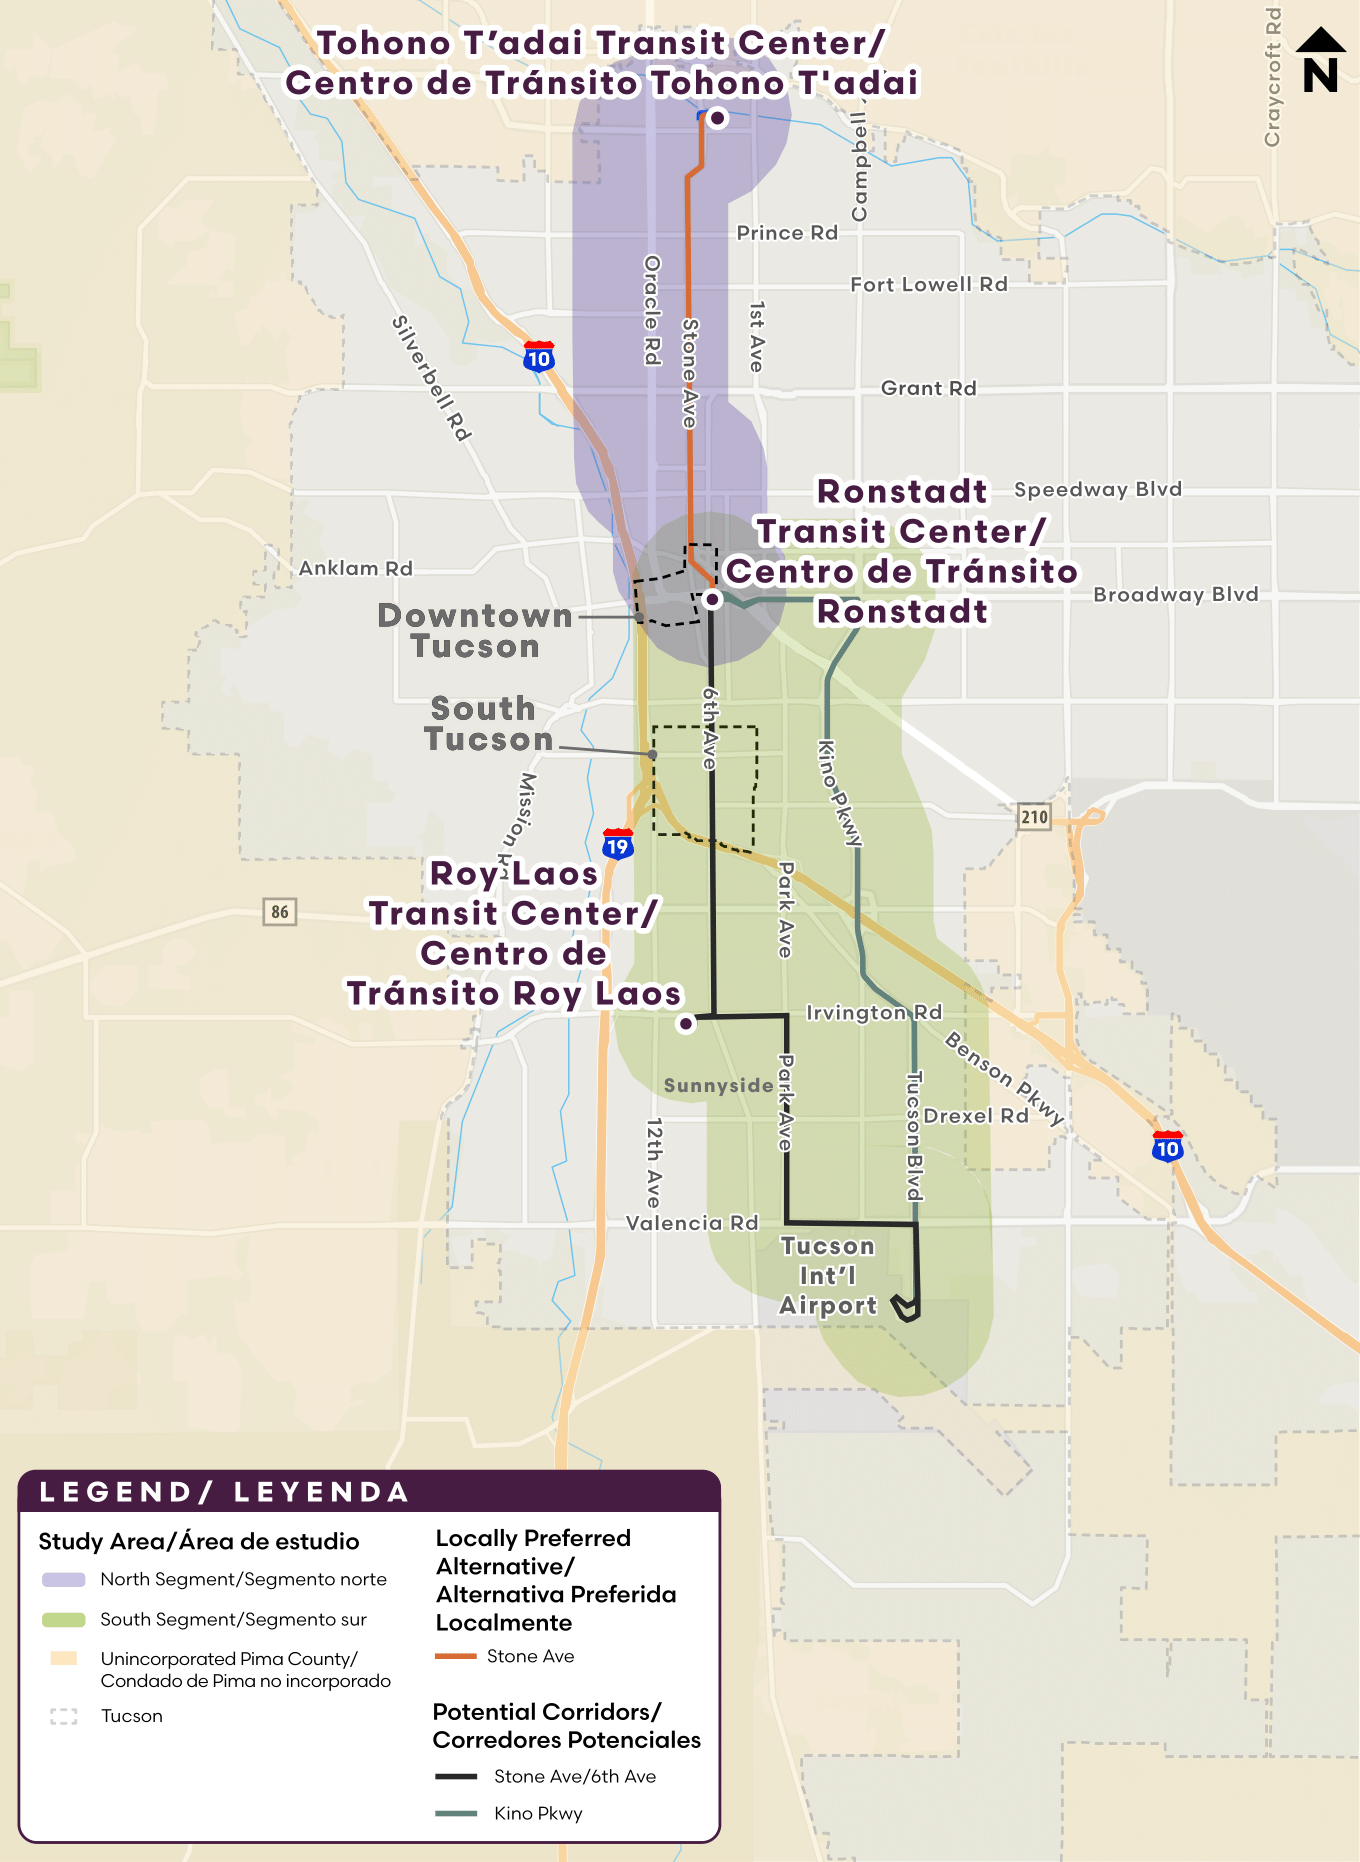 Tahono T'adai Transit Center Map